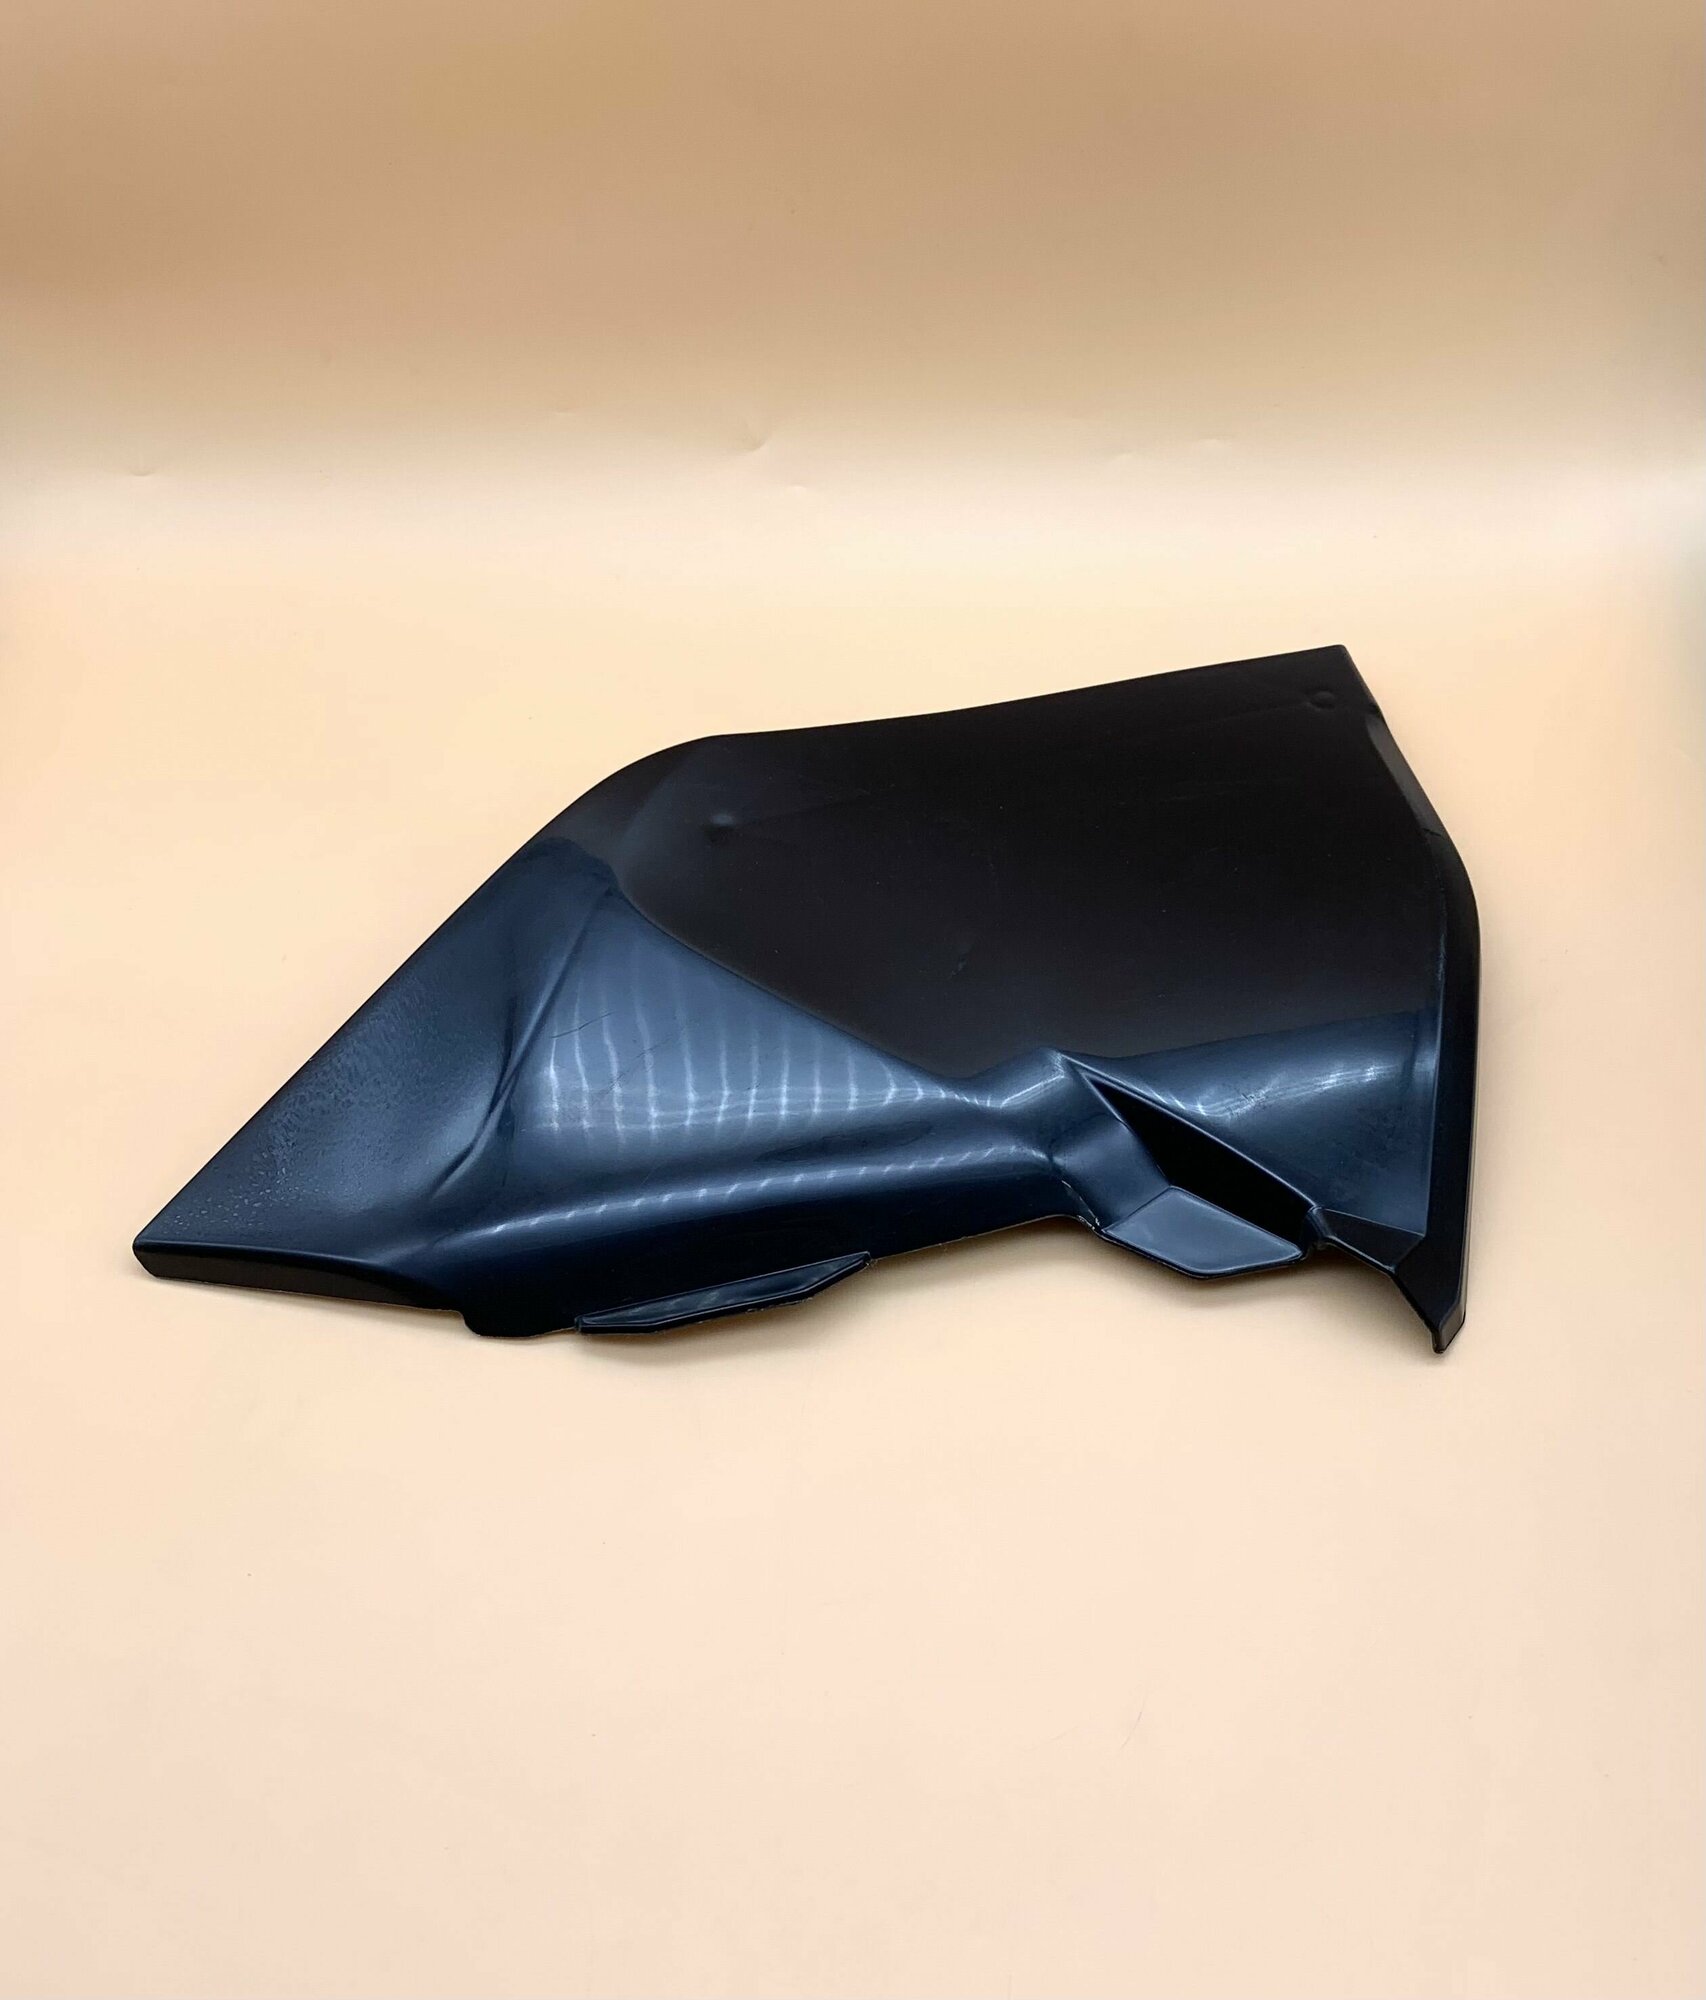 Пластик, крышка воздушного фильтра Avantis Enduro (KTM) черный